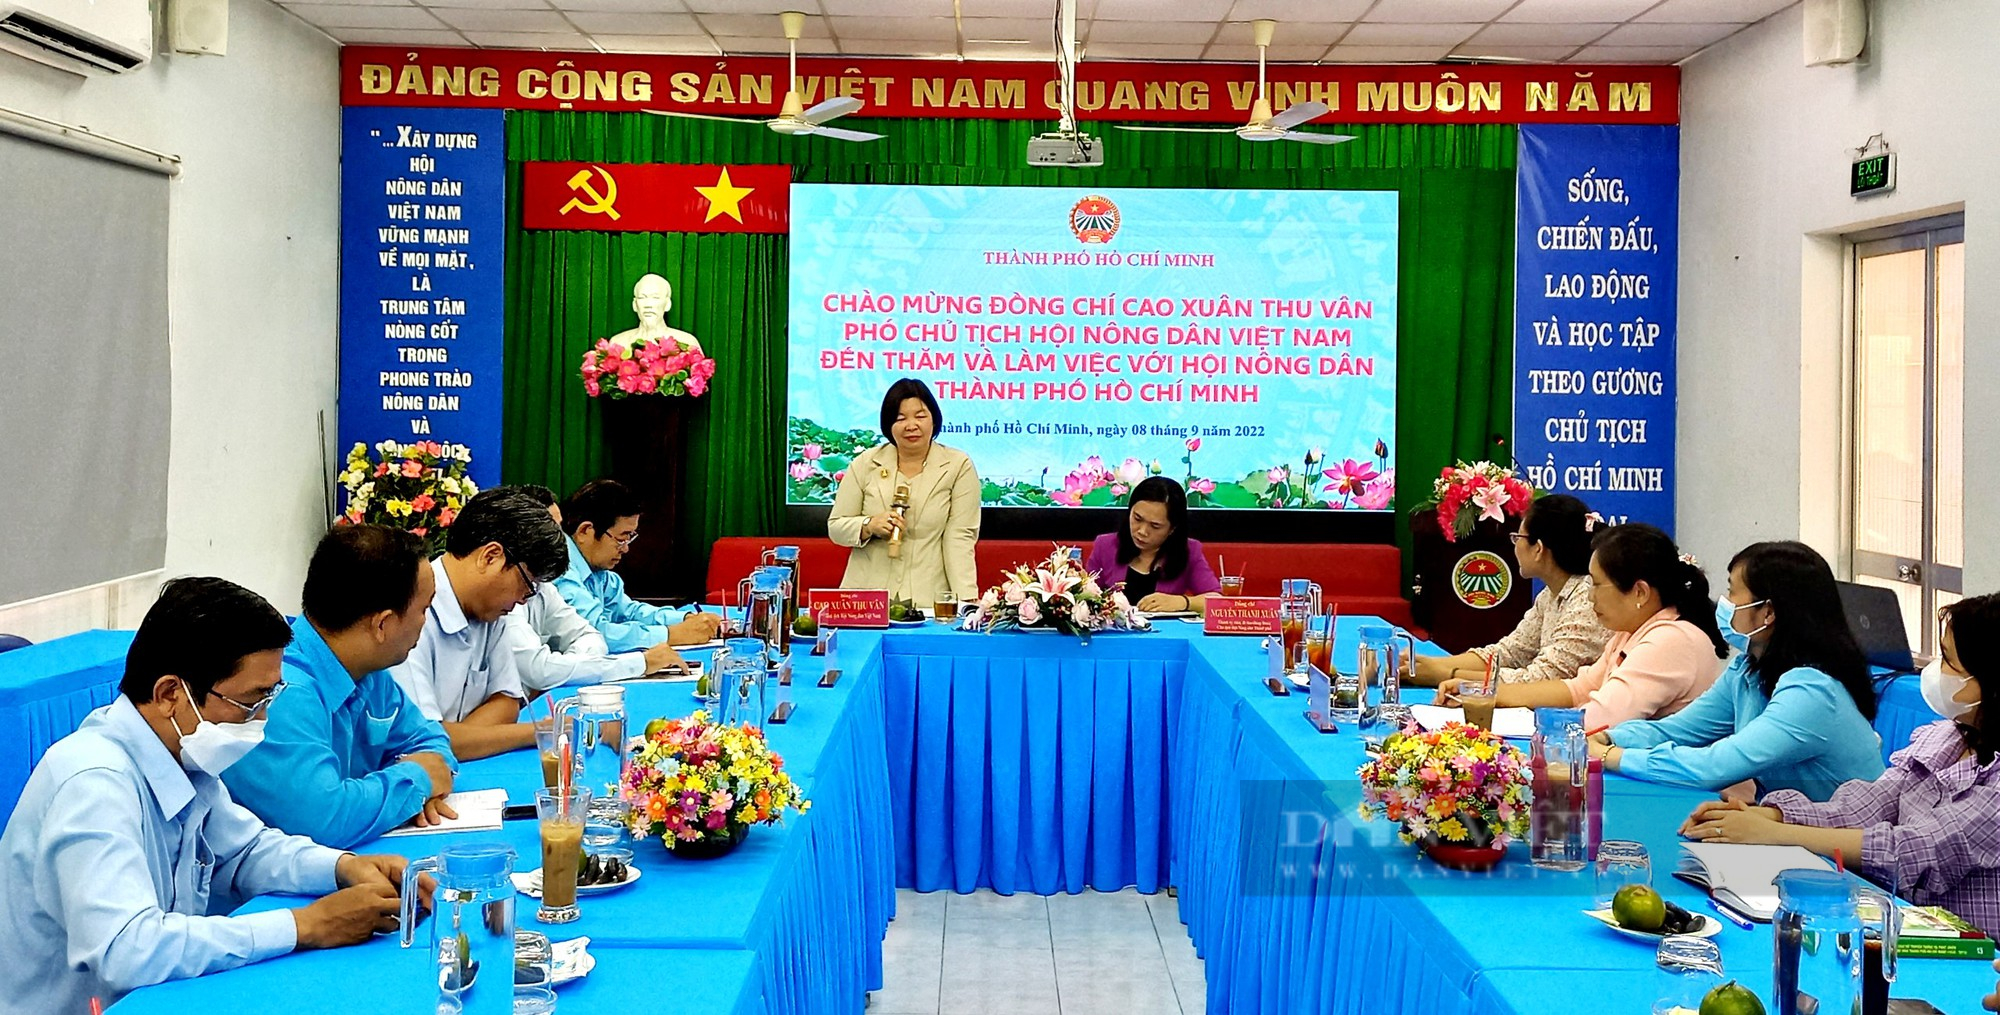 Phó Chủ tịch TW HND Việt Nam Cao Xuân Thu Vân: HND TP.HCM phải là cánh chim đầu đàn  - Ảnh 1.